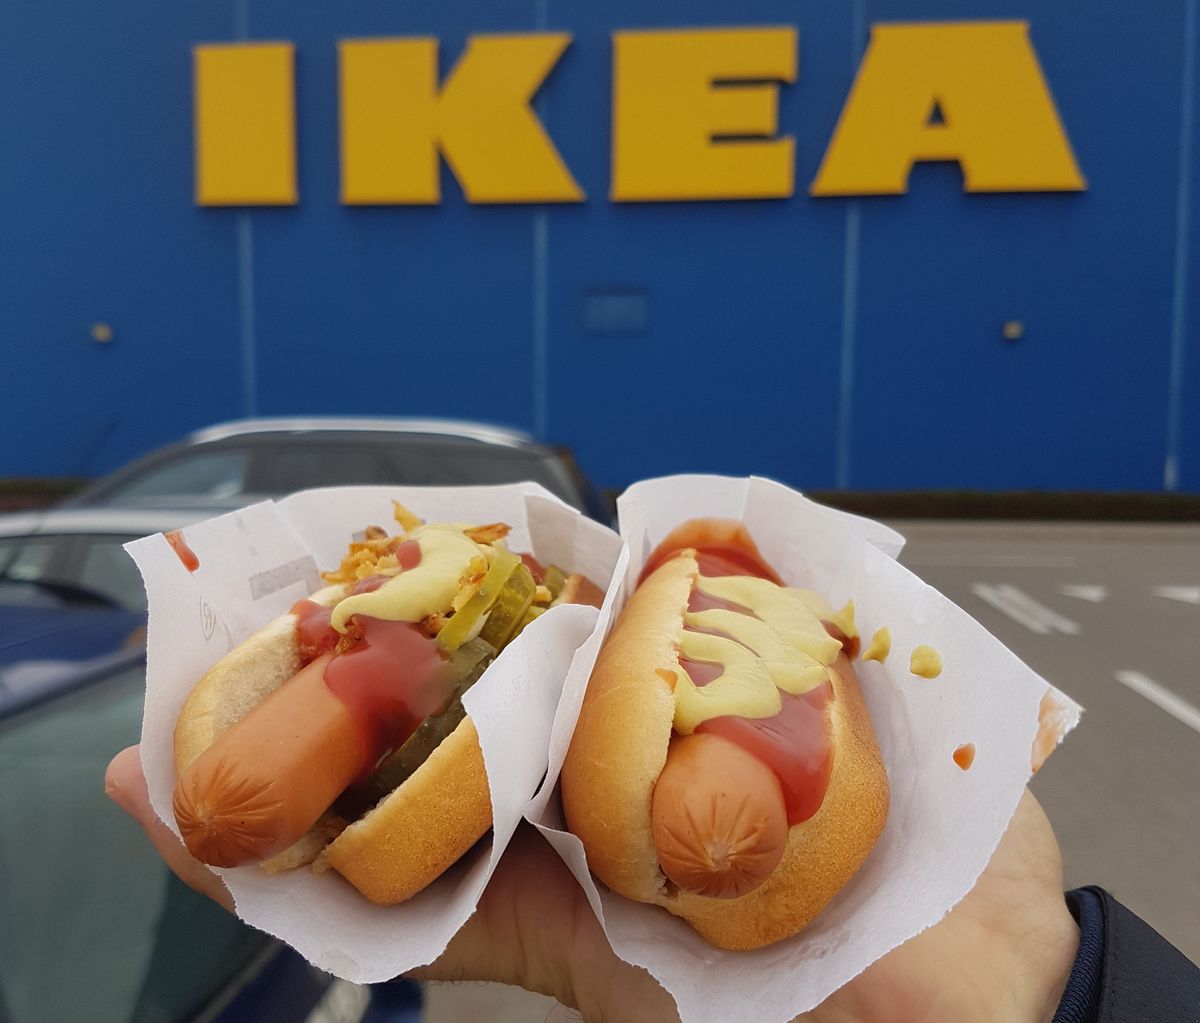 Ikea podwyższyła cenę hot dogów. Po raz pierwszy od ponad 20 lat